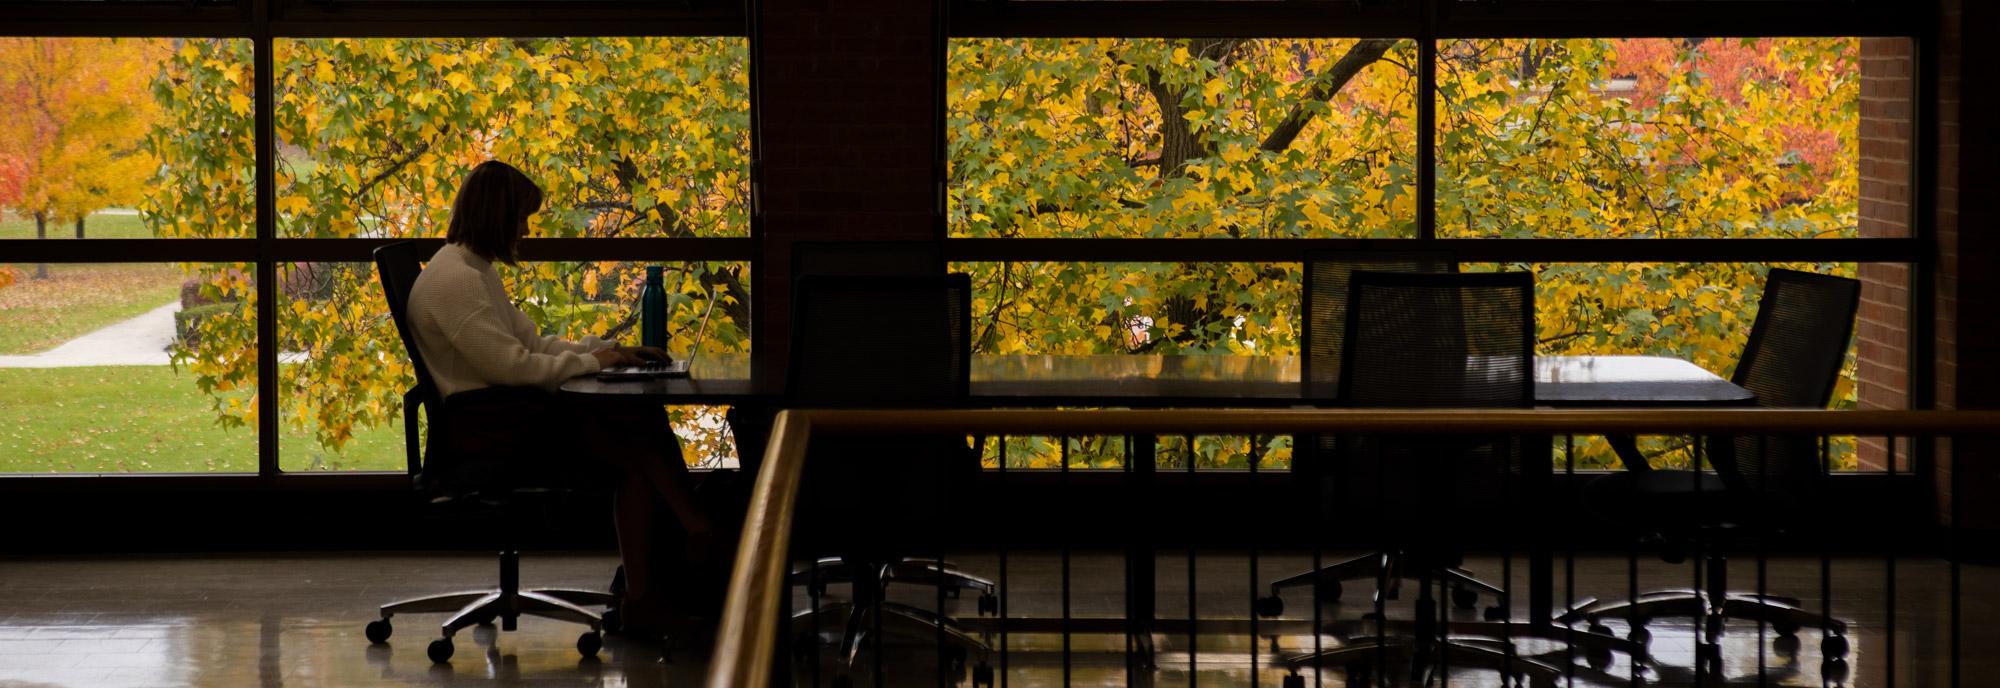 一名学生在俄亥俄北部大学药学院工作. 秋天的落叶装饰了金莎3777的校园.